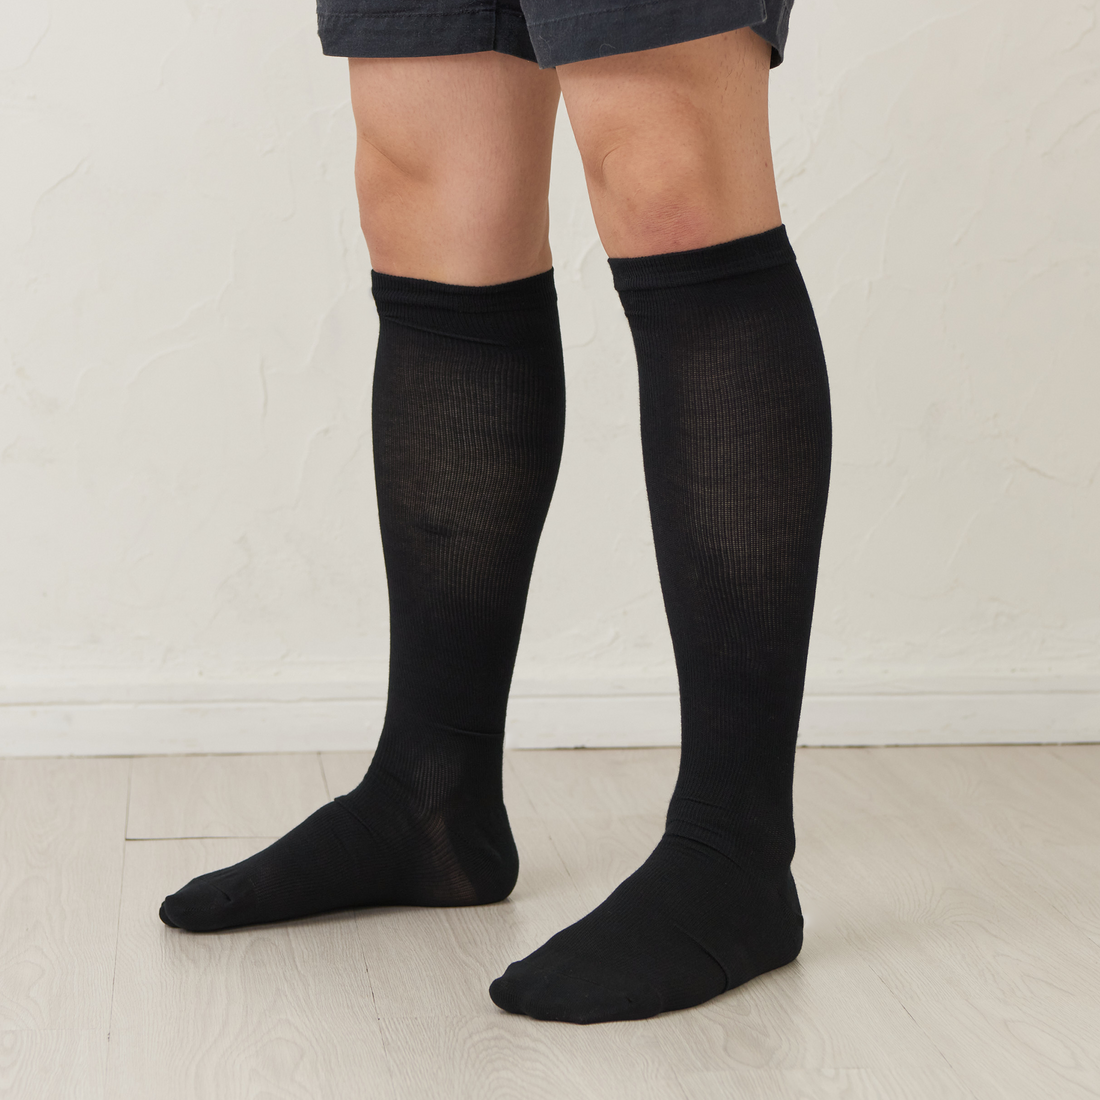 男士壓力襪 - 薄型大號 - N002-L